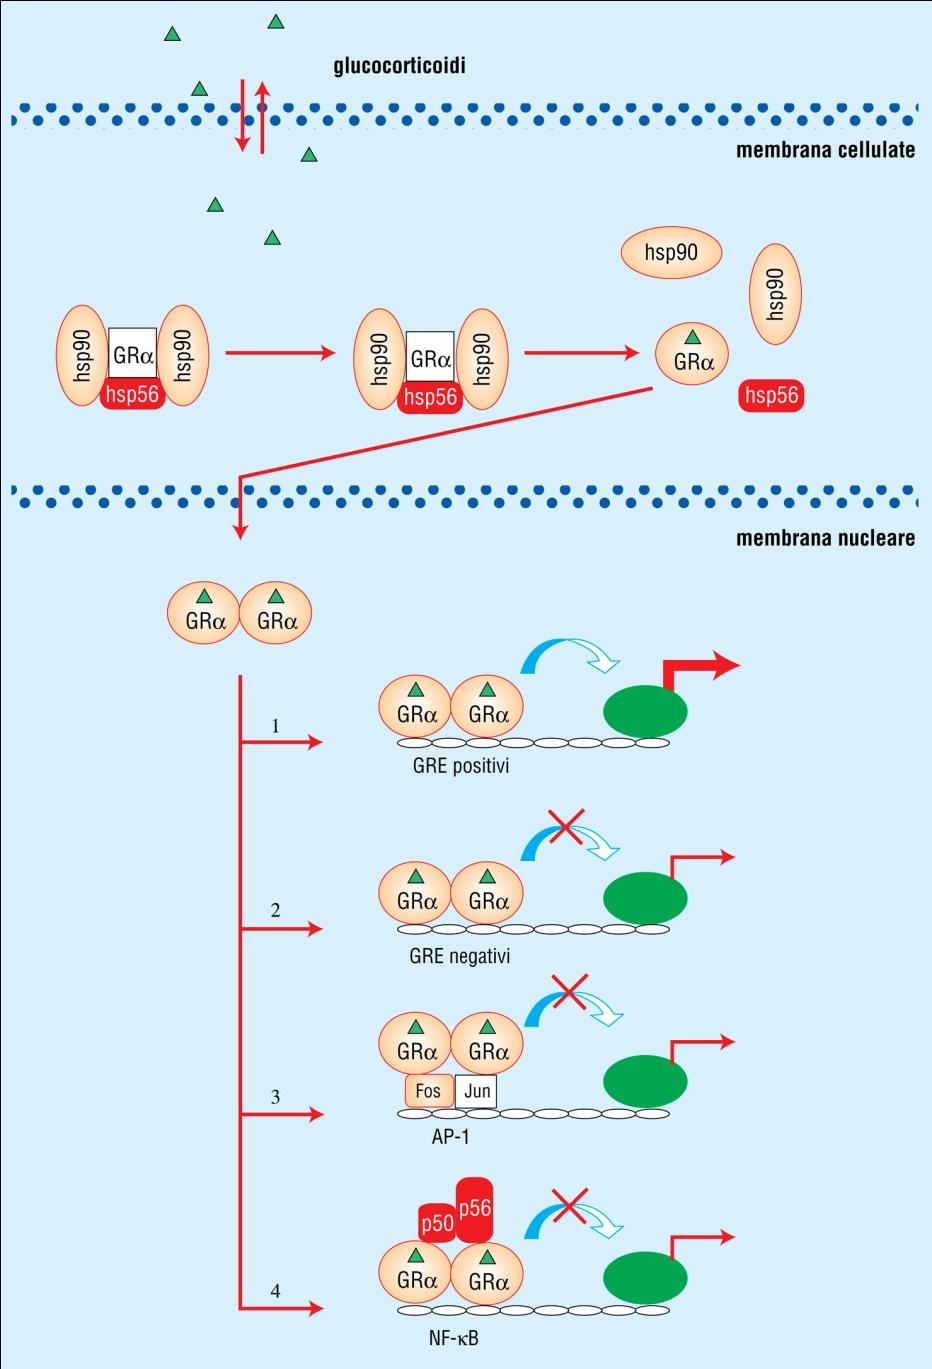 MECCANISMO D AZIONE GLUCOCORTICOIDI Il recettore legato e dimerizzato può attivare o inibire la trascrizione genica mediante legame a sequenze responsive positive o negative.